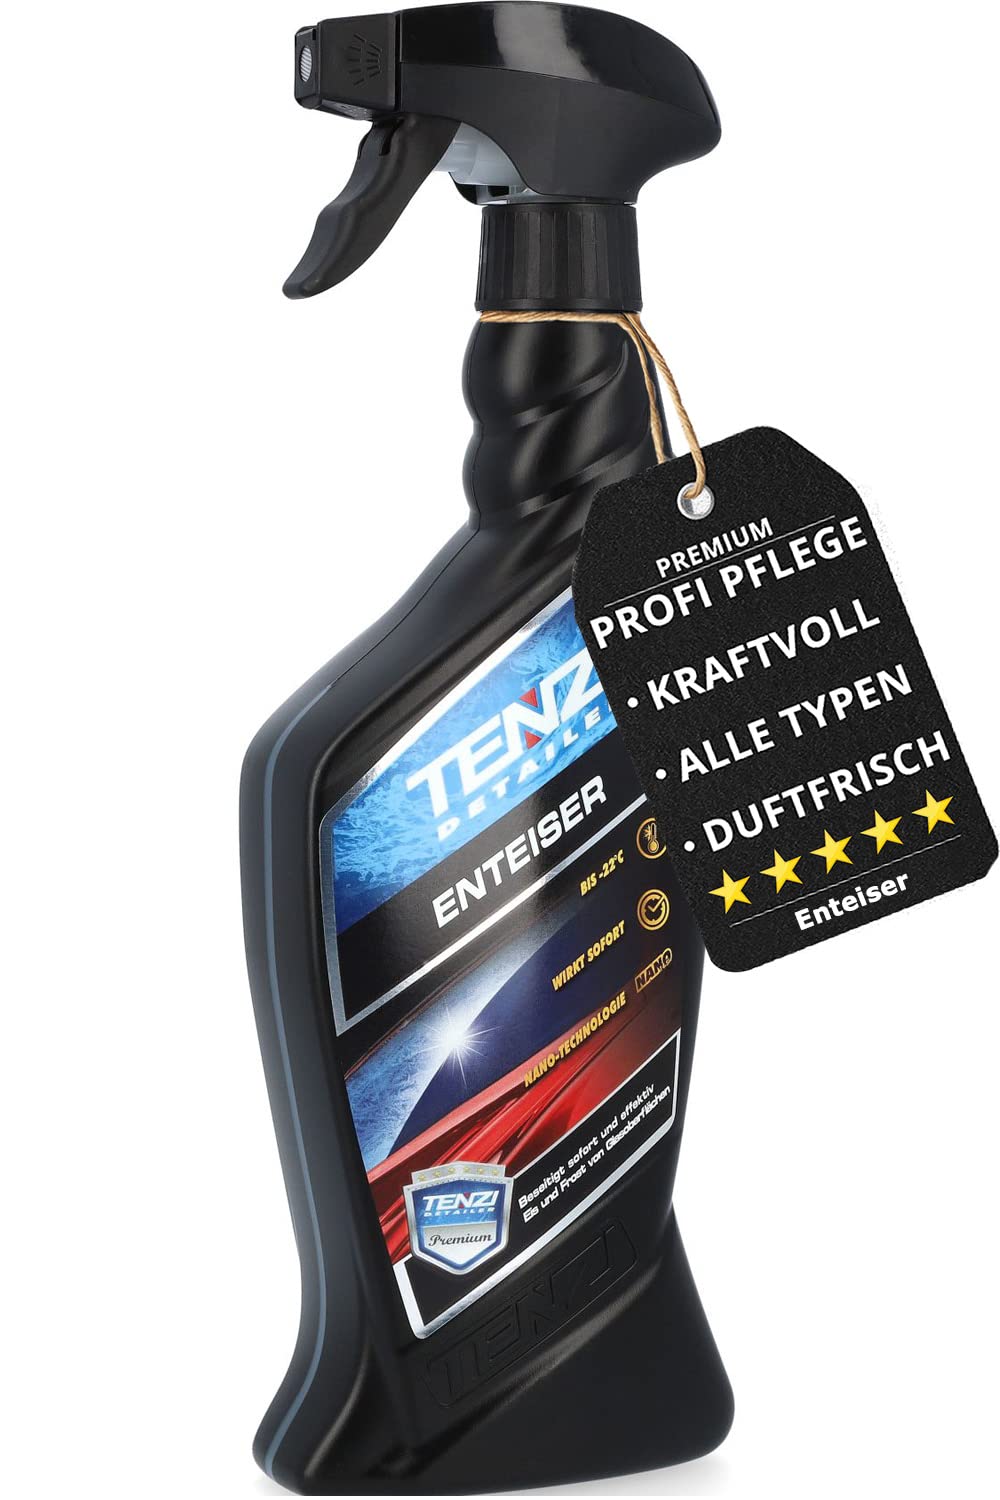 TENZI Premium Scheibenenteiser (600ml) Spray für Auto & Motorrad - Enteiser, Enteiserspray, Entfroster für Scheiben, Autotür & Schloss - Enteisungsspray bis -22°C Frost - Antifrost Eisfrei Autoscheibe von TENZI